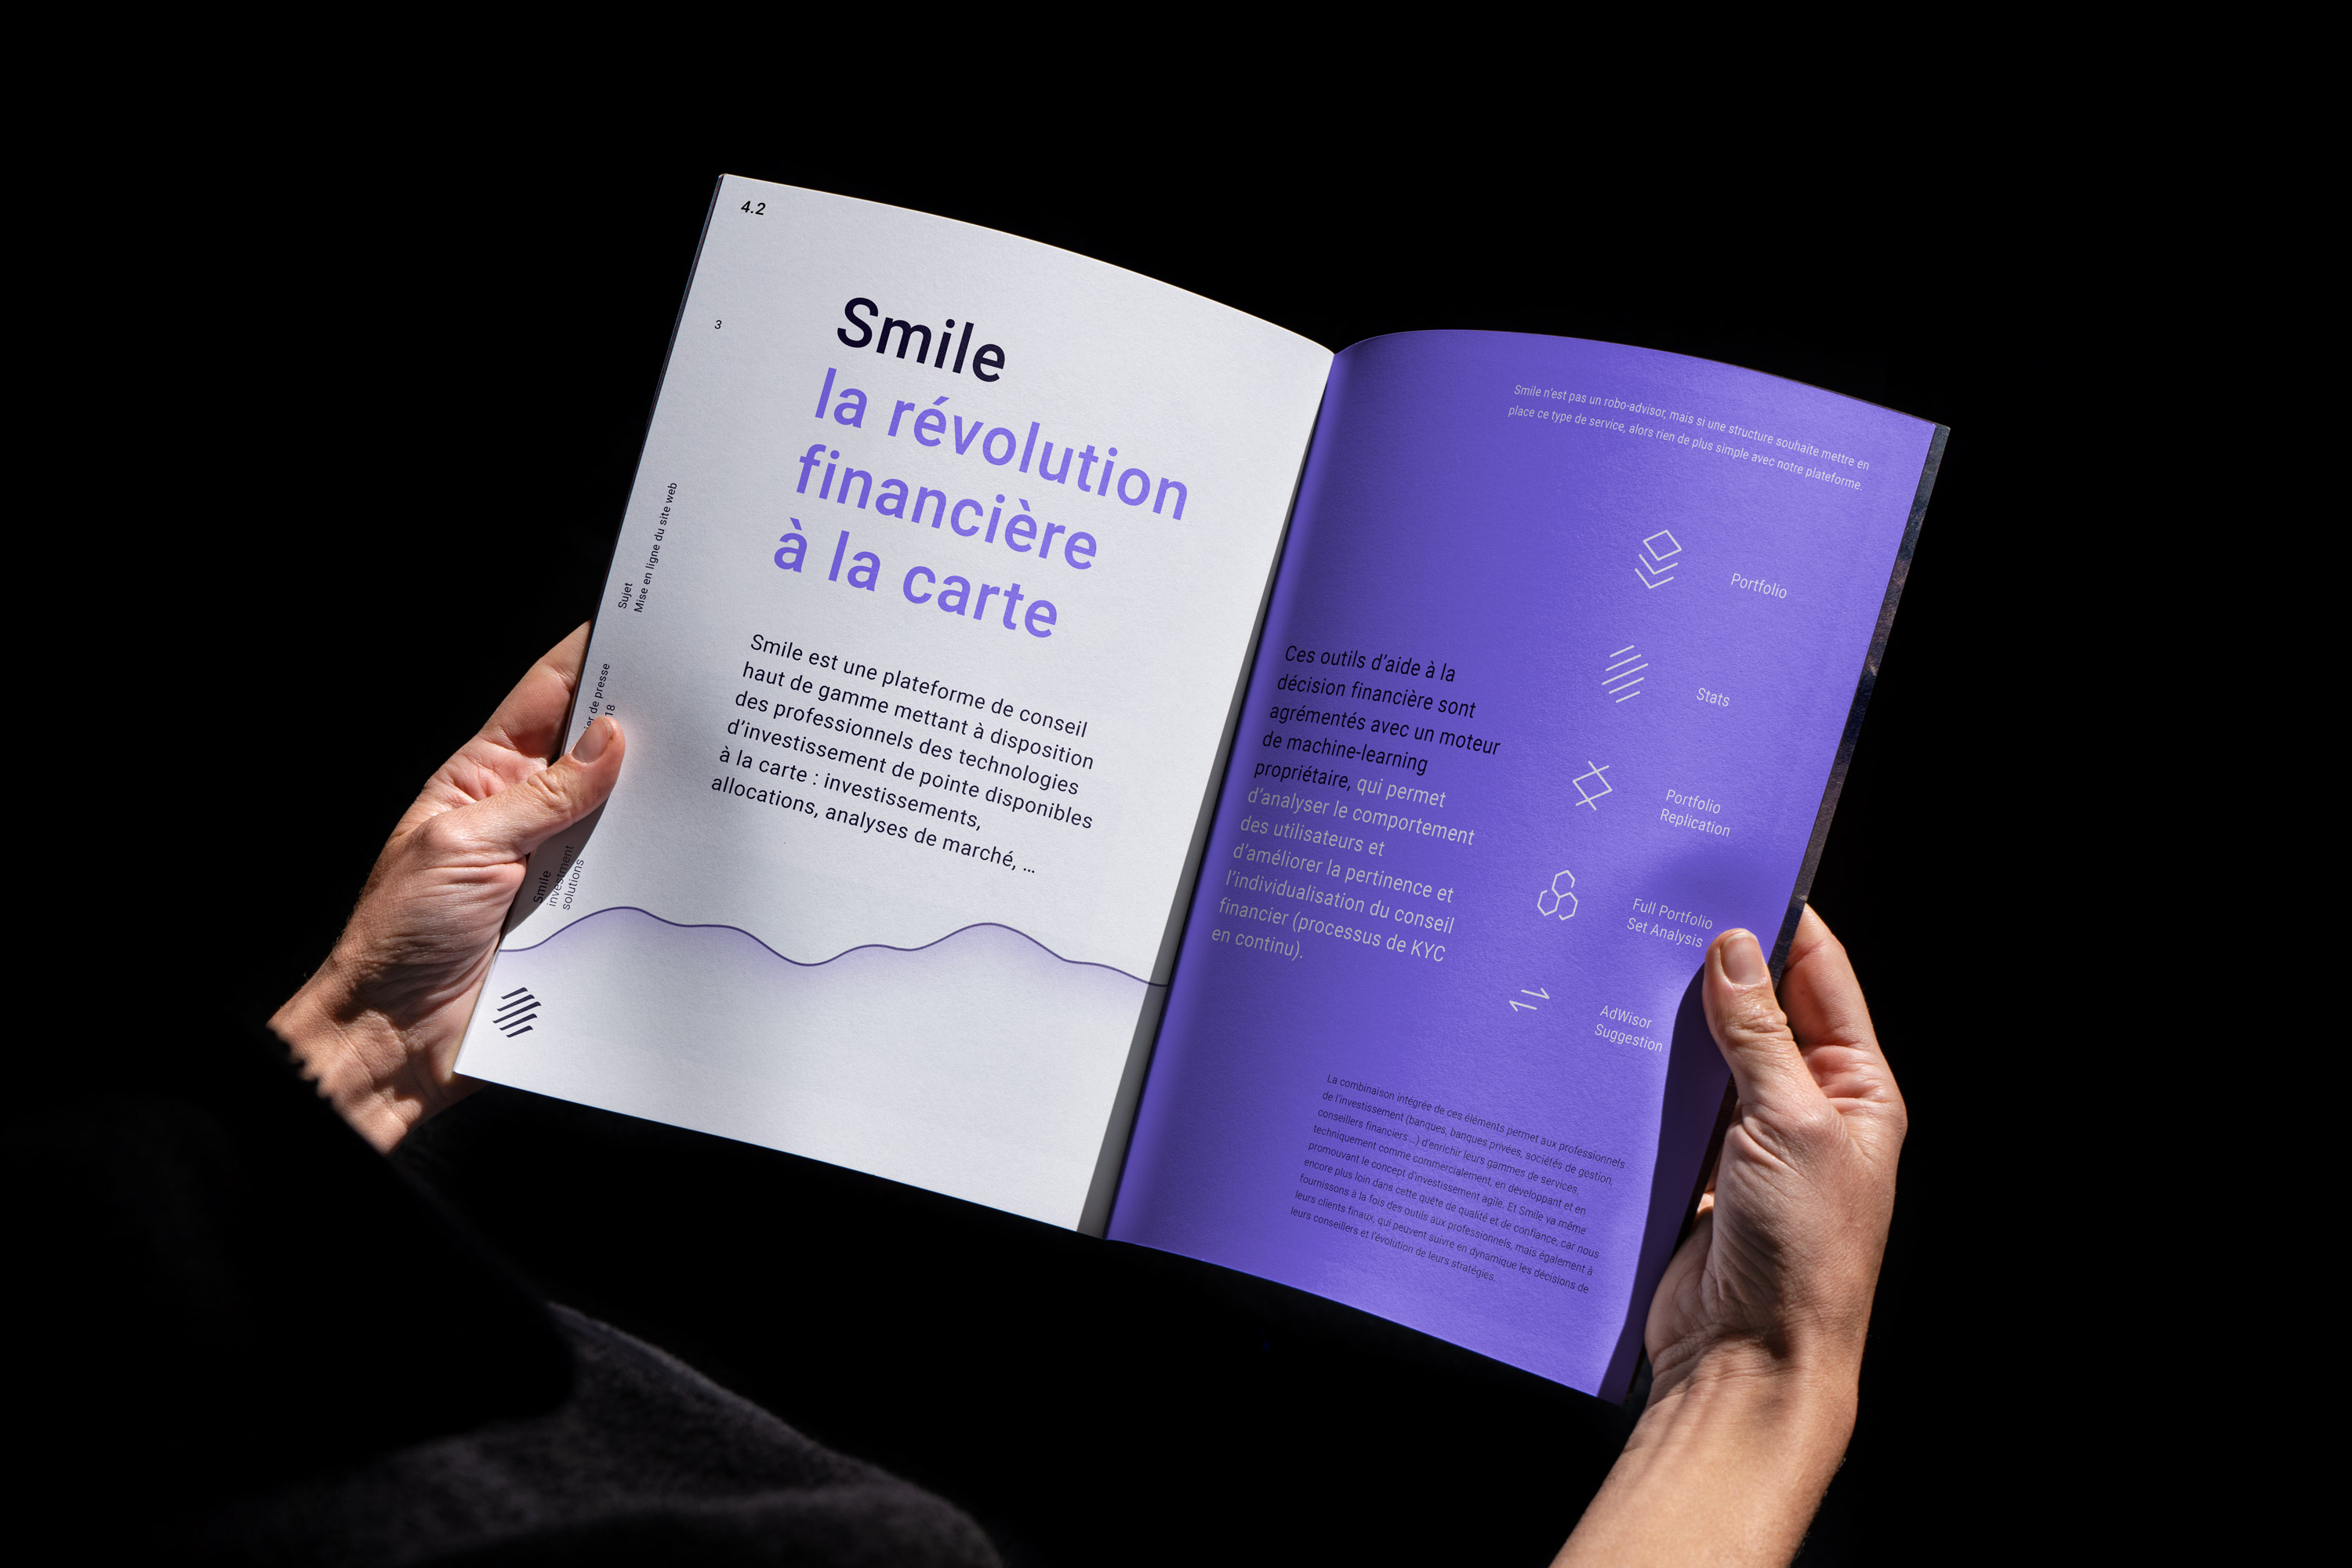 Smile investments solutions, livret, leaflet